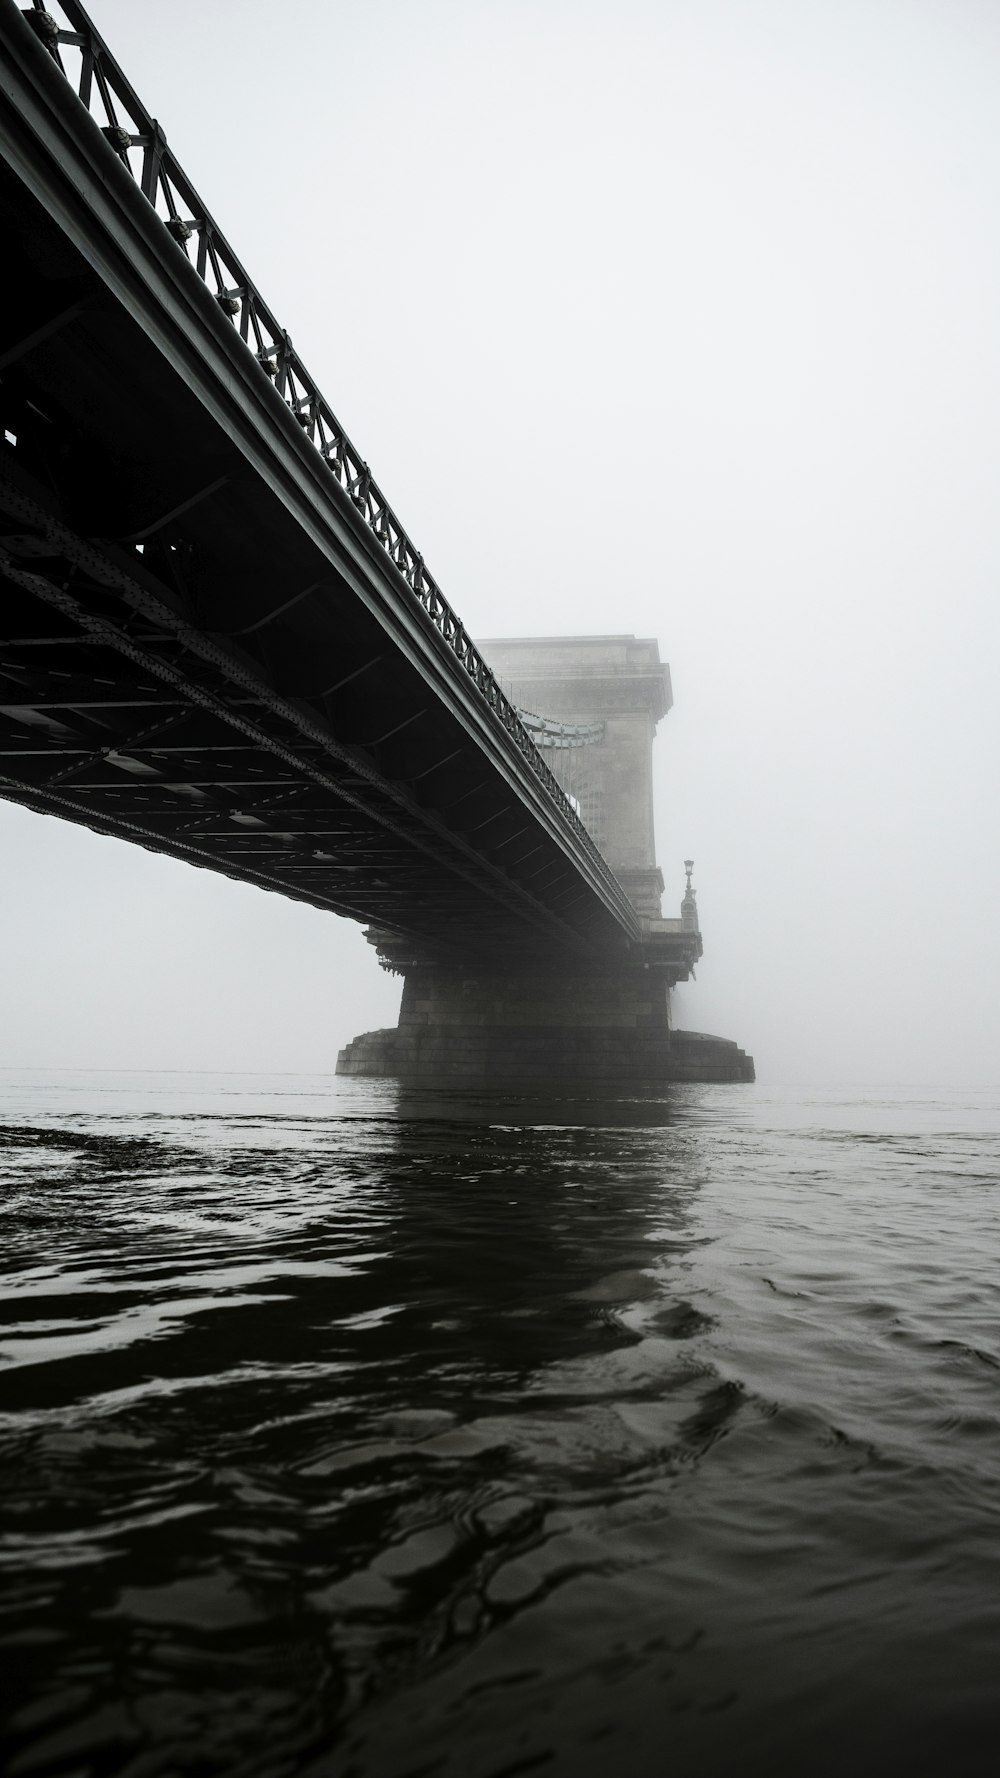 fotografia in scala di grigi del ponte sospeso sull'acqua calma